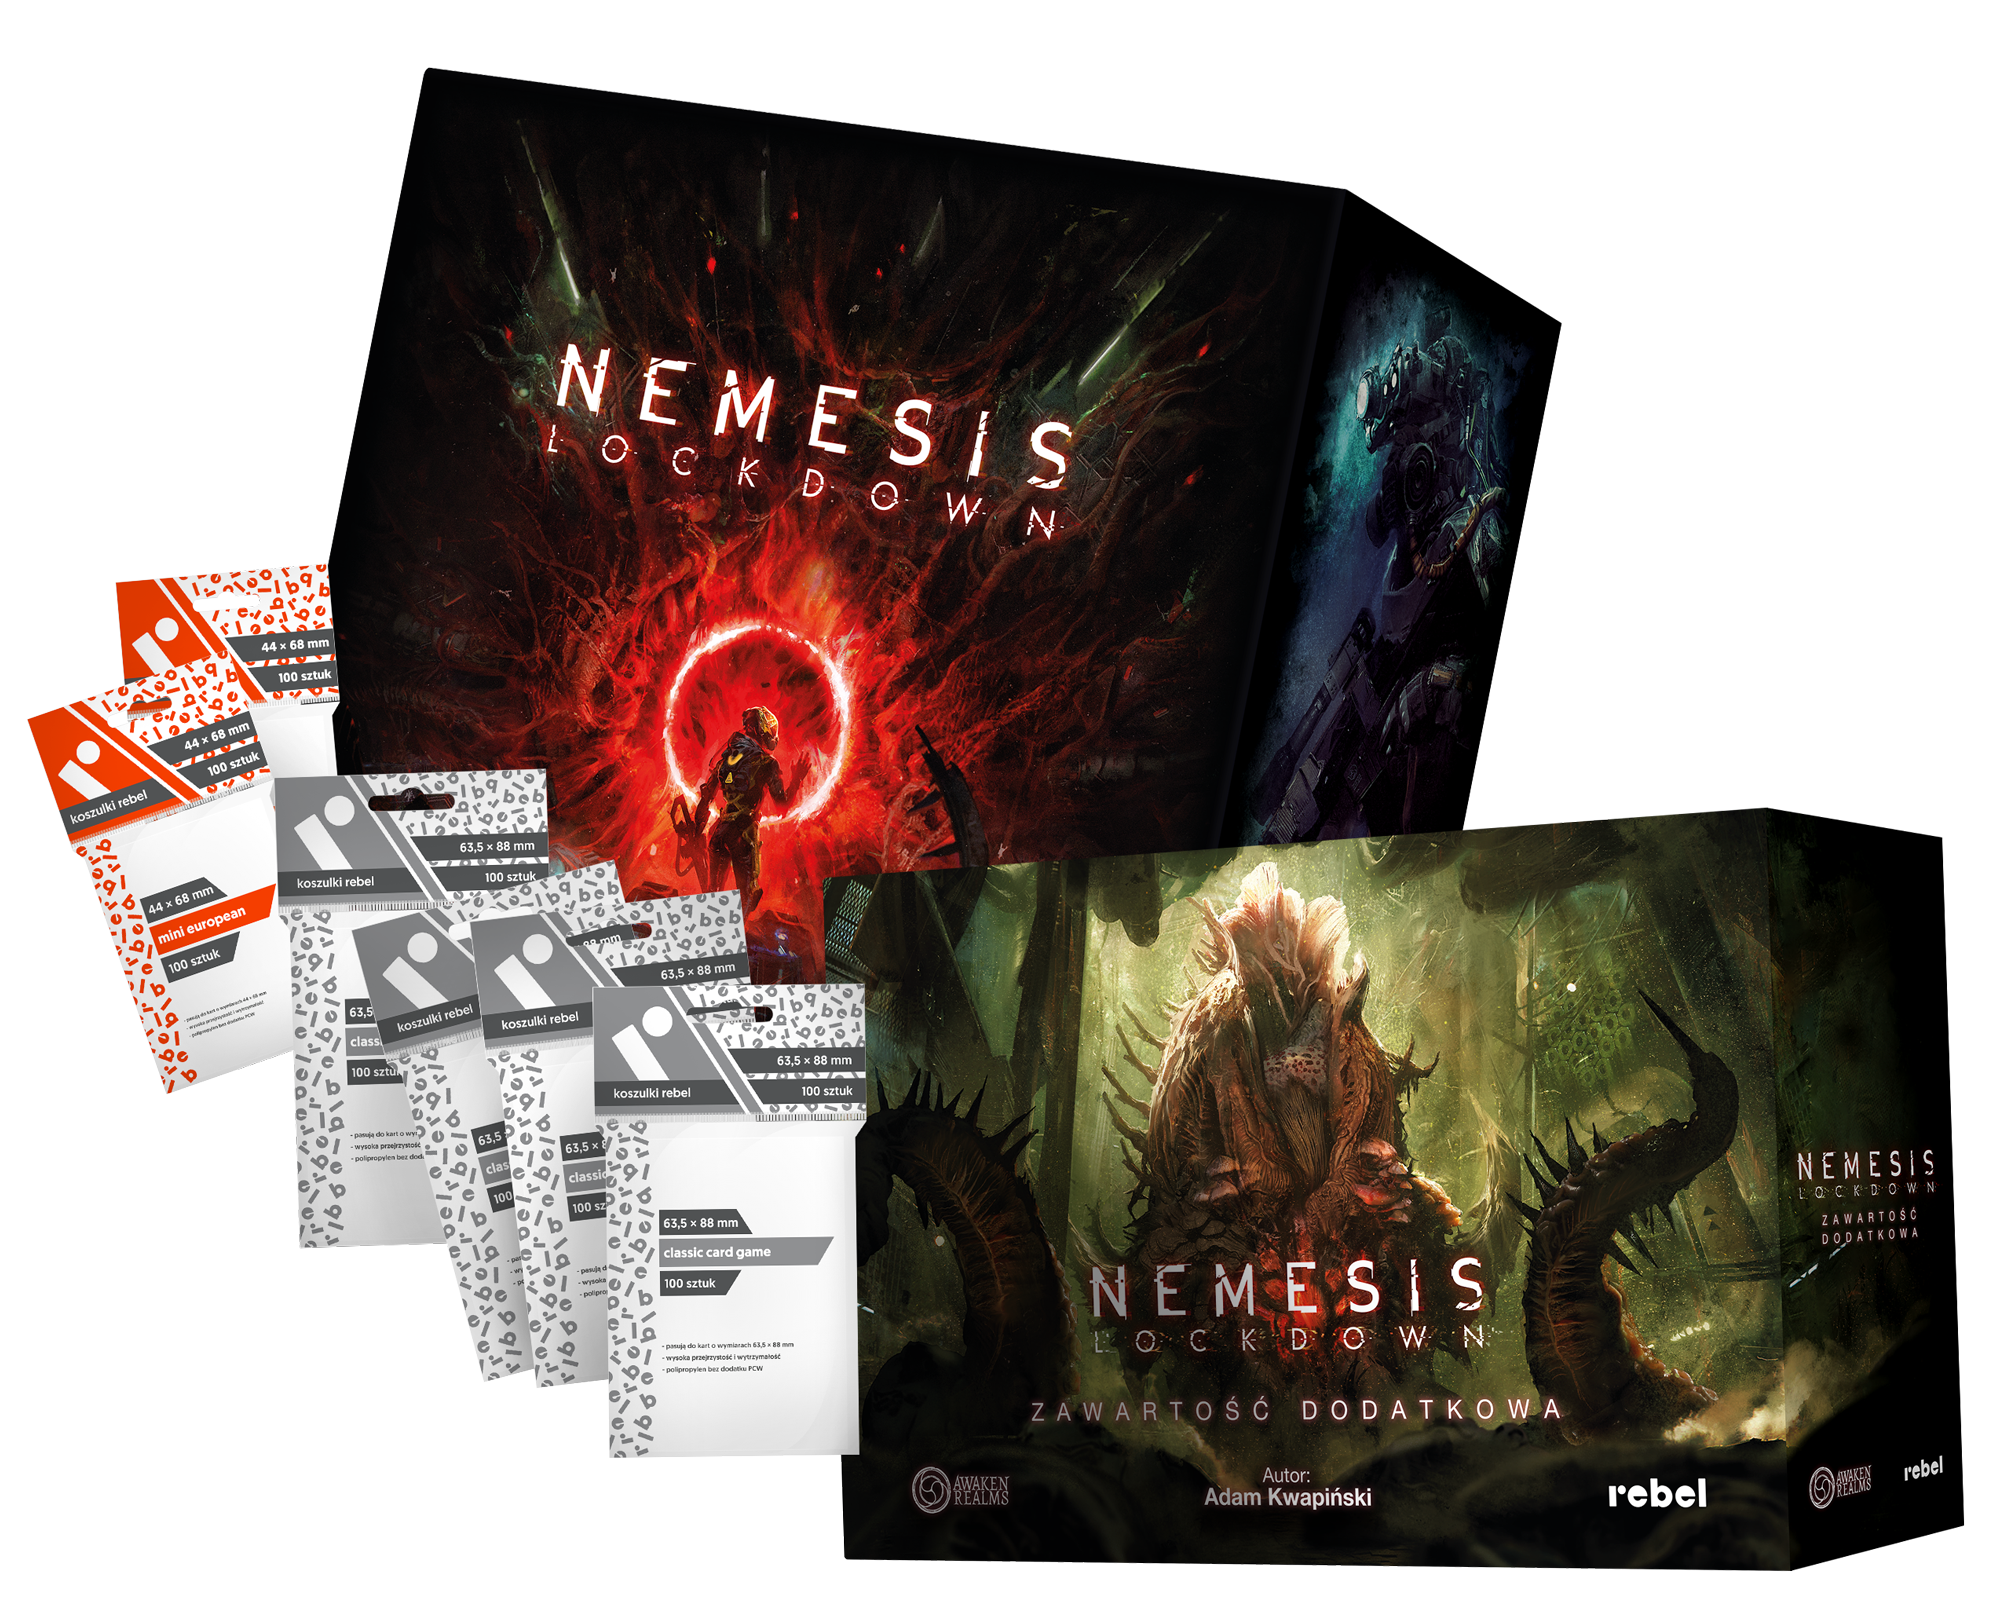 Pakiet Nemesis: Lockdown + Zawartość dodatkowa + Zestaw koszulek